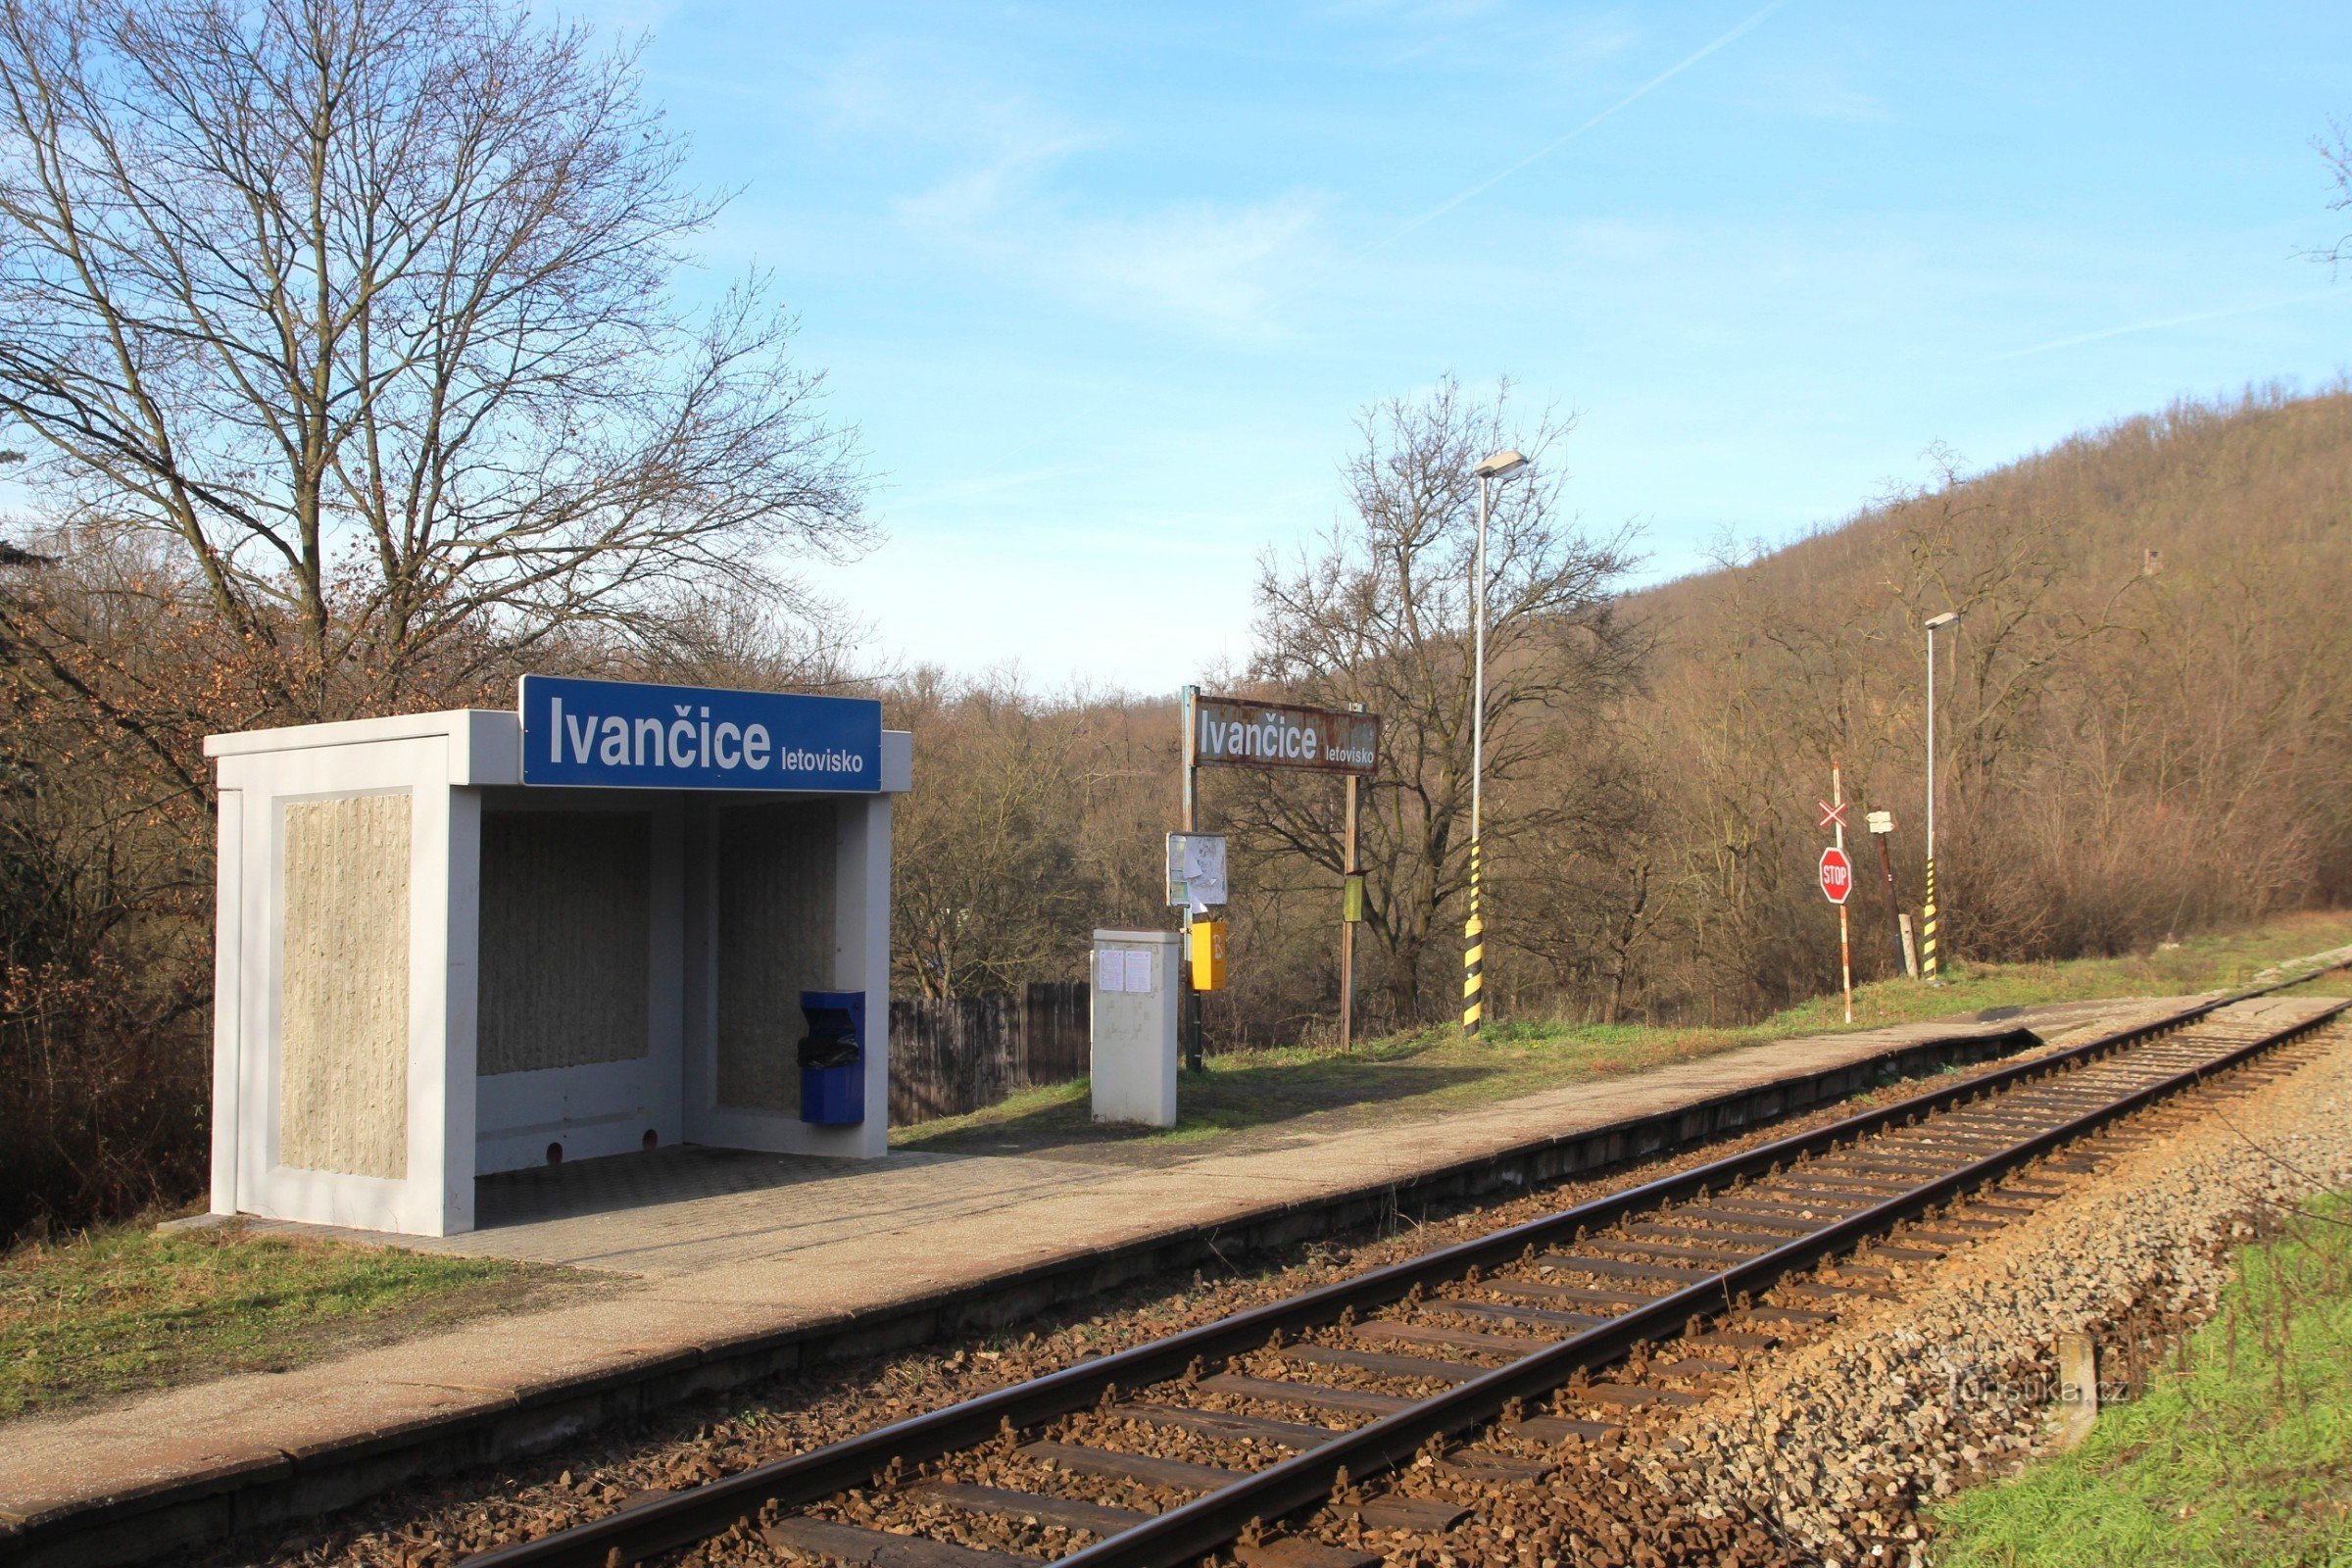 Stacja kolejowa Ośrodek Ivančice